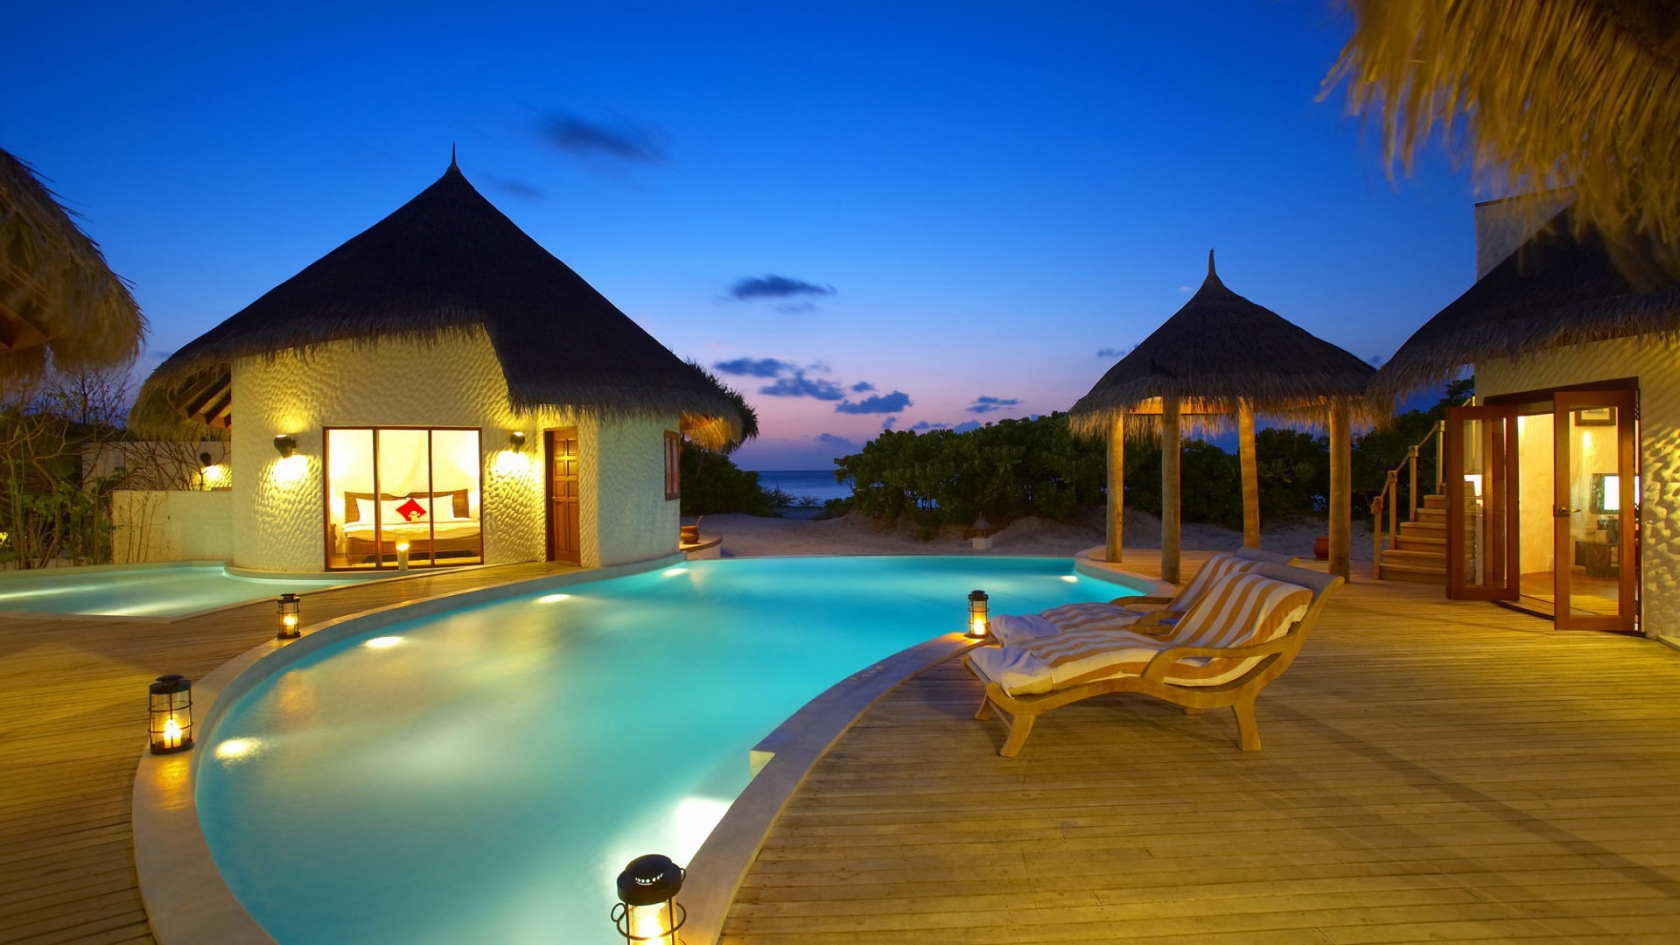 Maldives 5 Star Resort for 1680 x 945 HDTV resolution